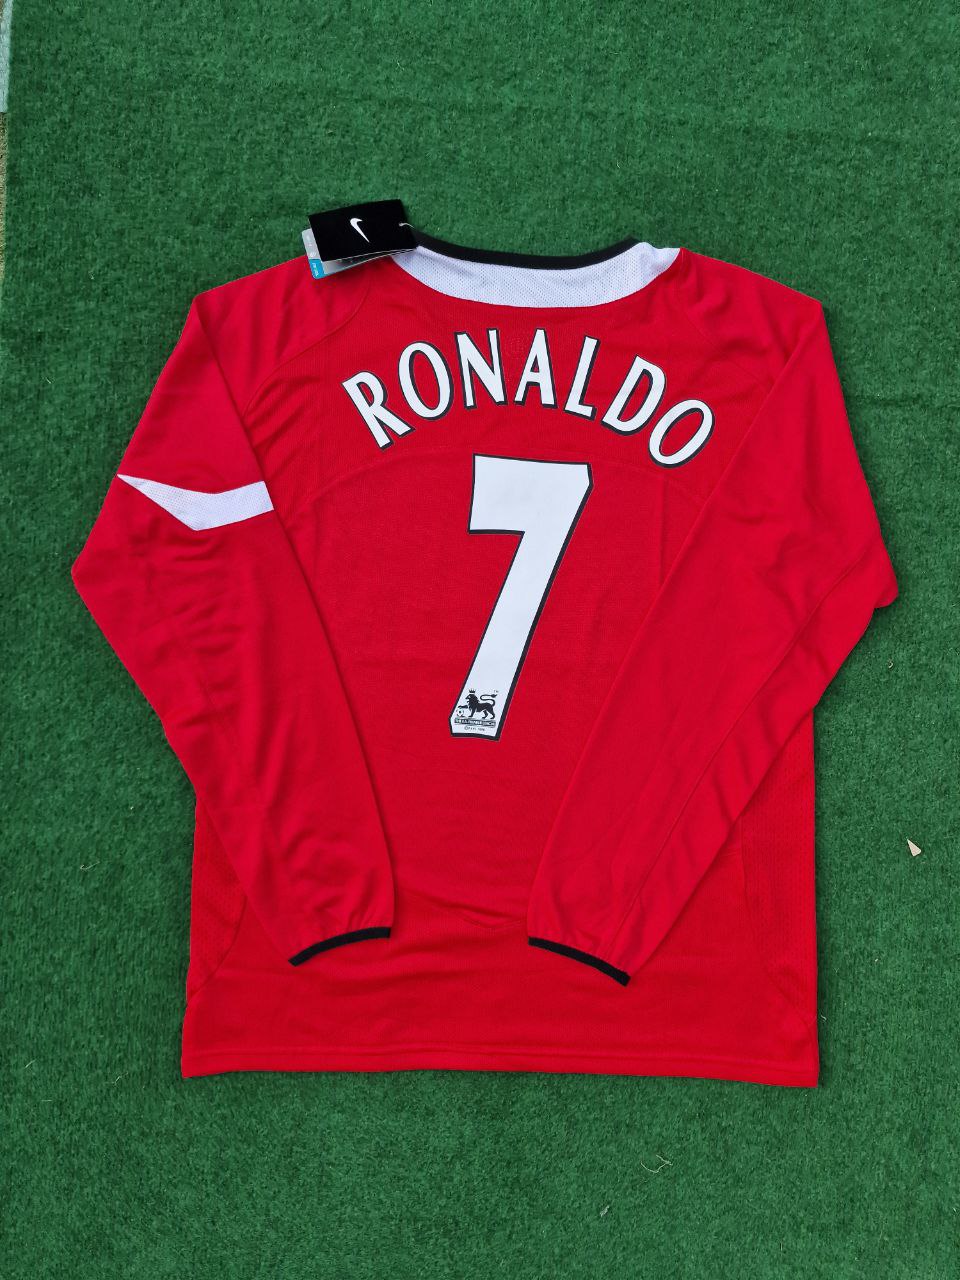 Cristiano Ronaldo Manchester United 2005 Retro-Fußballtrikot